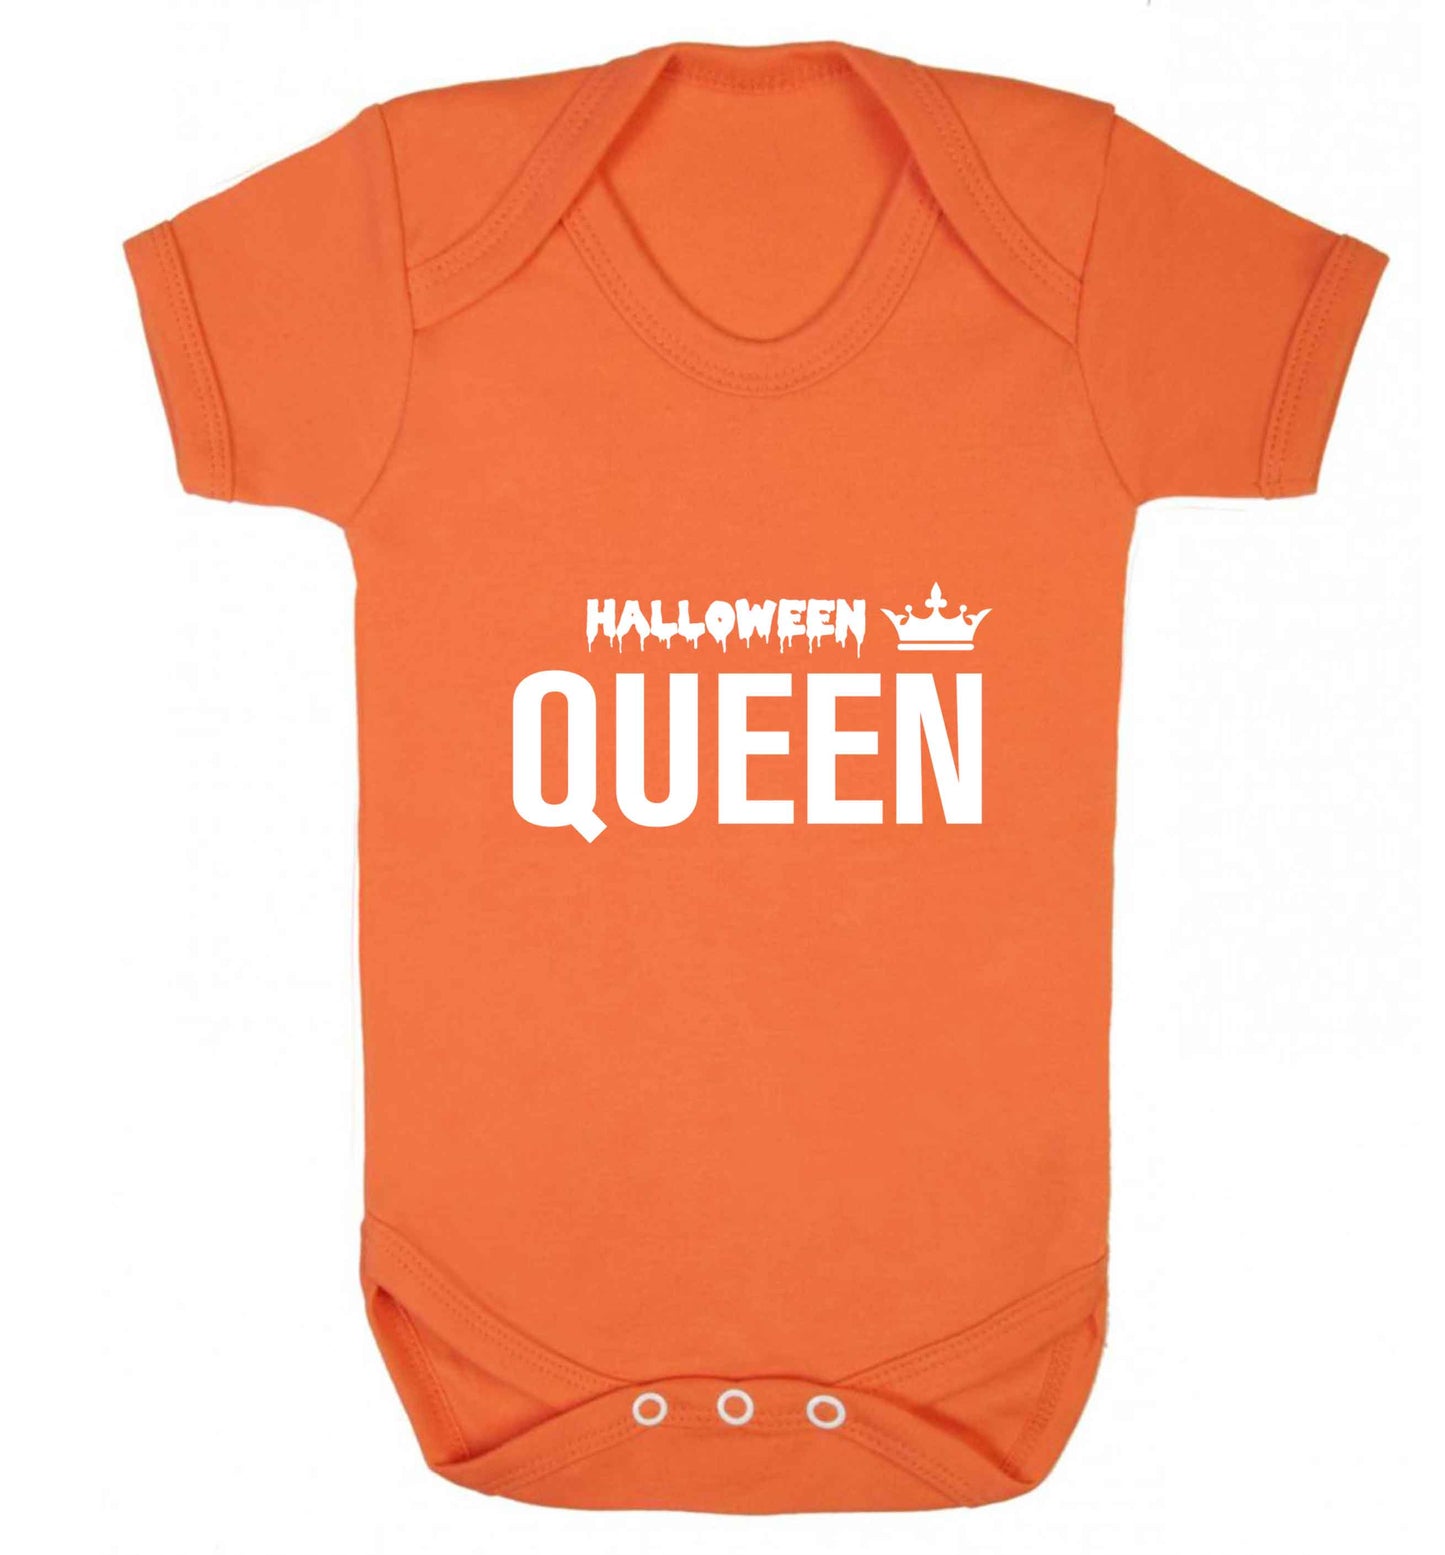 Halloween queen baby vest orange 18-24 months